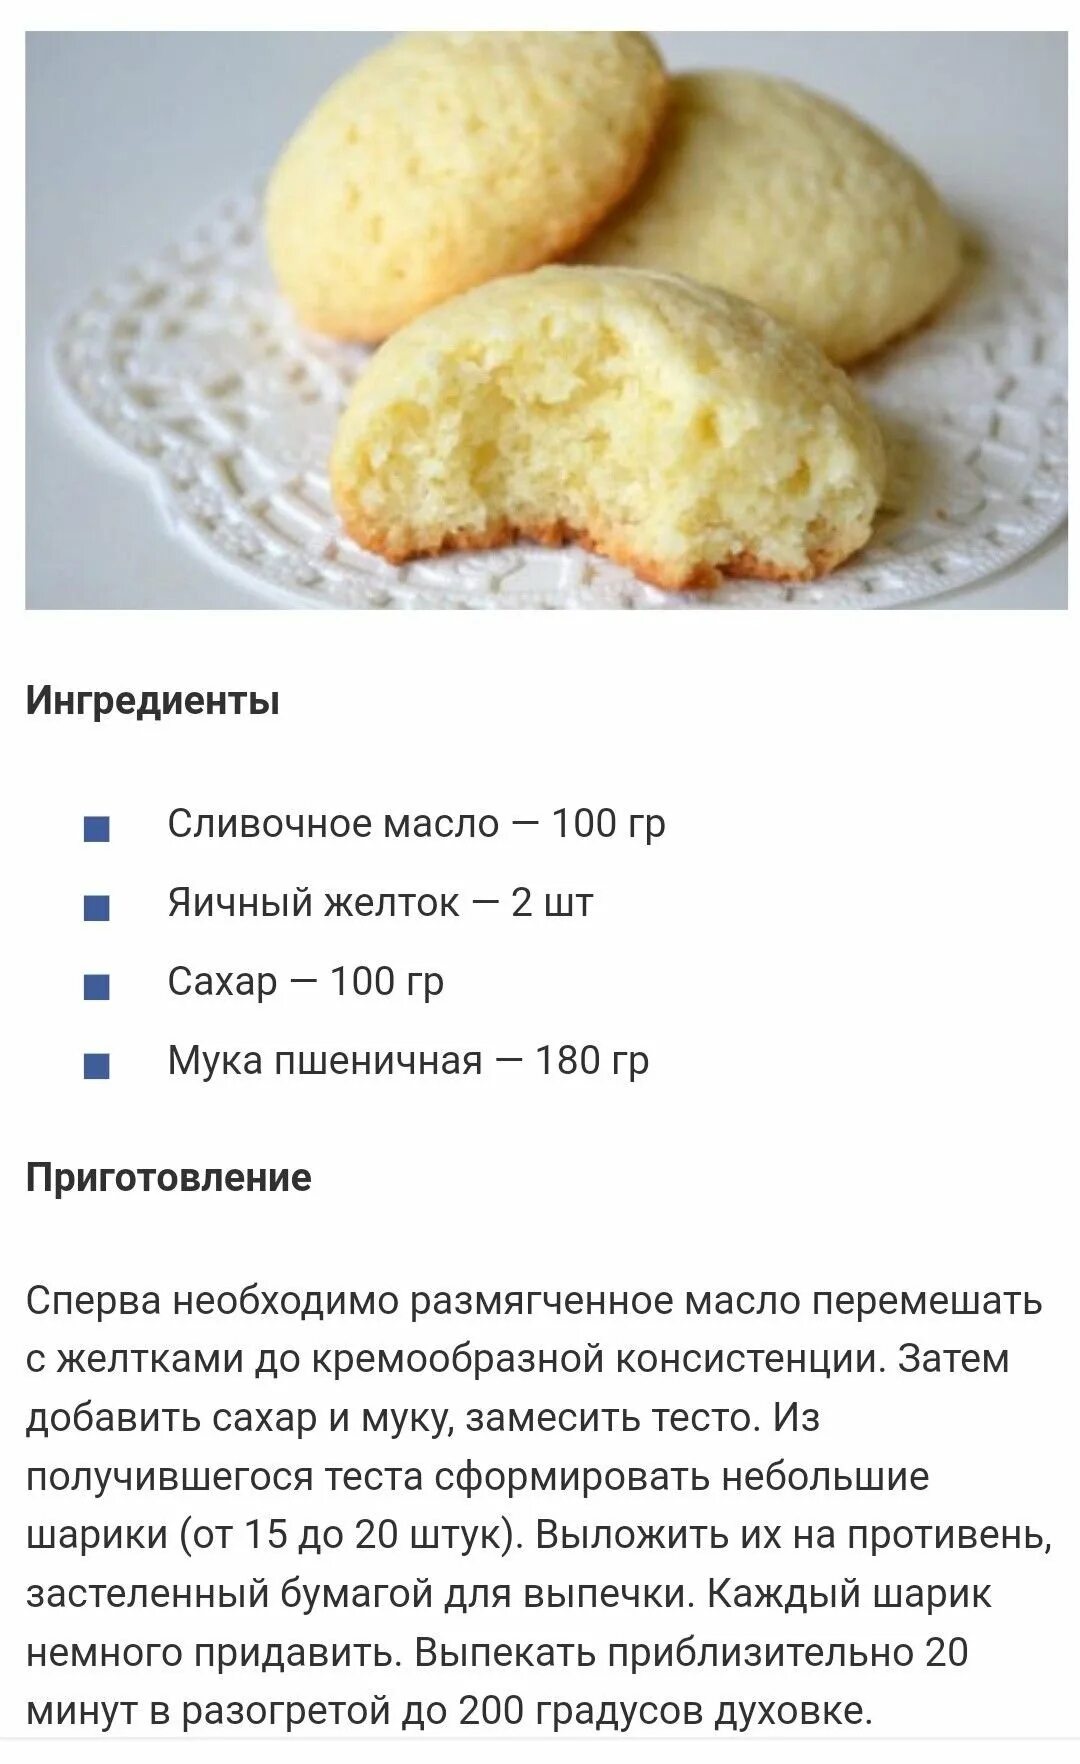 Сколько надо яиц муки. Рецепт печенья в духовке простой. Рецепт теста для печенья в духовке. Как приготовить печенье в домашних условиях в духовке. Рецепт печенья в духовке простой домашних условиях.